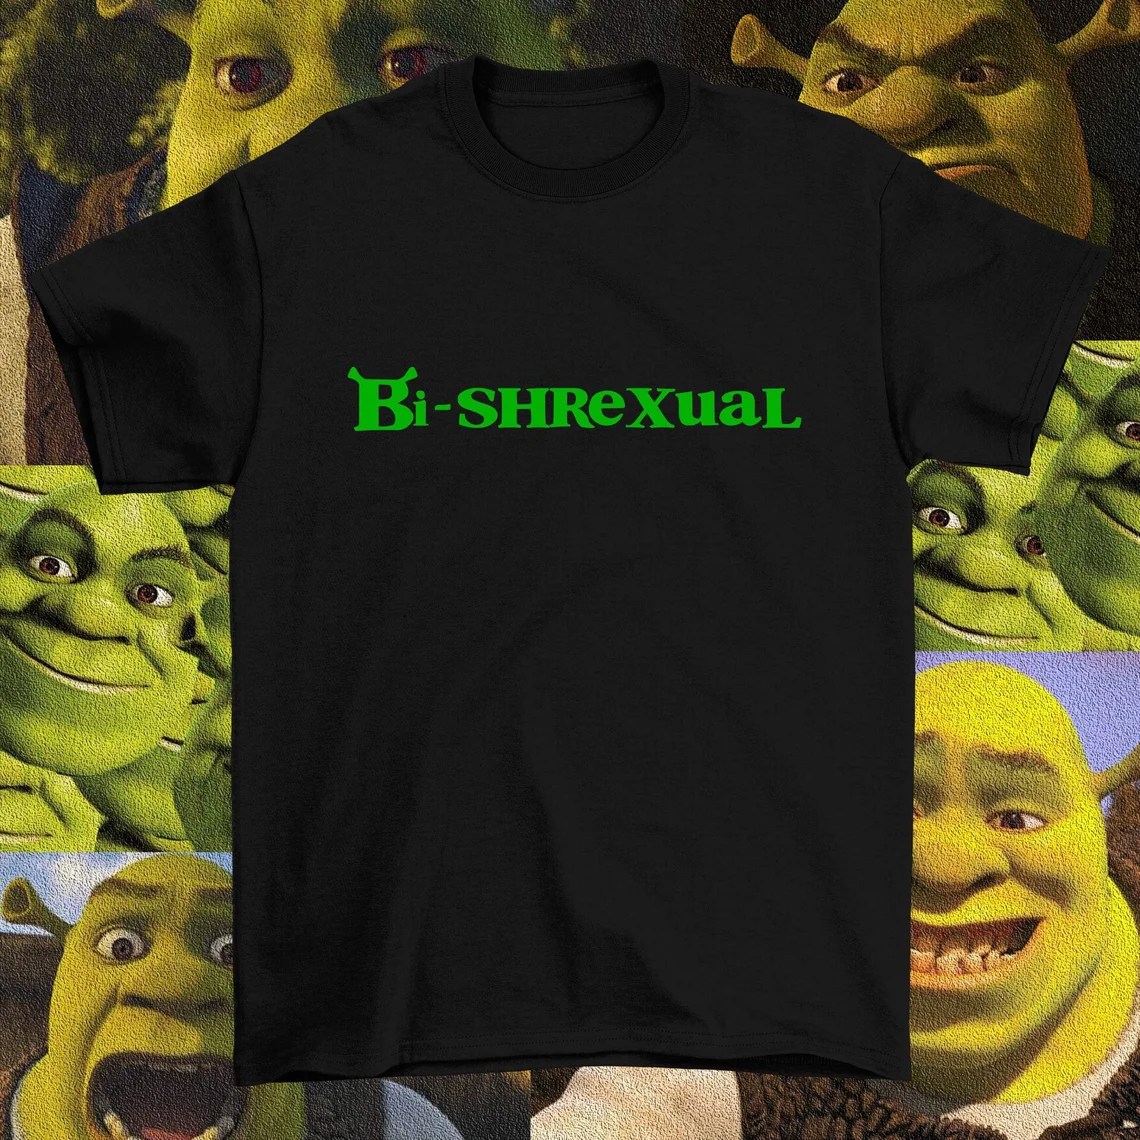 A "Bi-Shrexual" t-shirt. (Etsy/Mytshirtshopco)